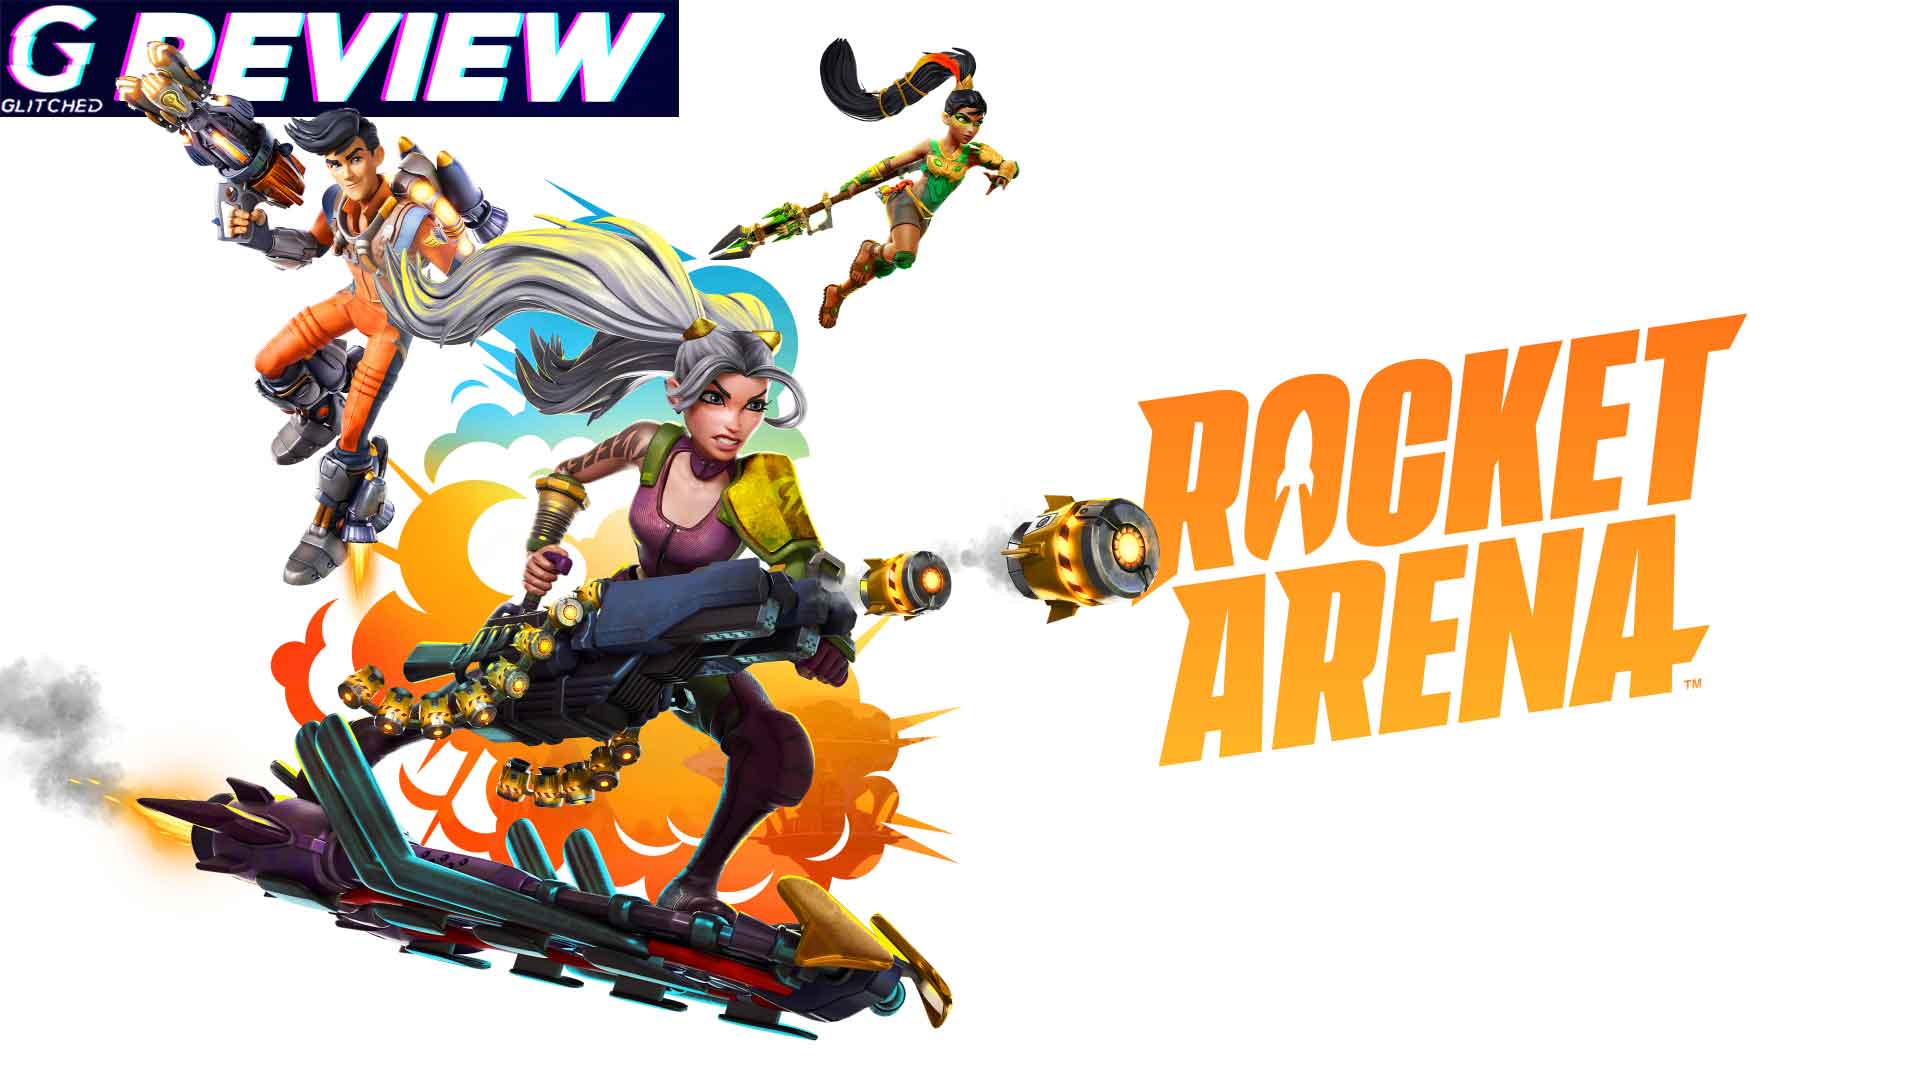 Rocket Arena Review – Super Quakerwatch Bros.